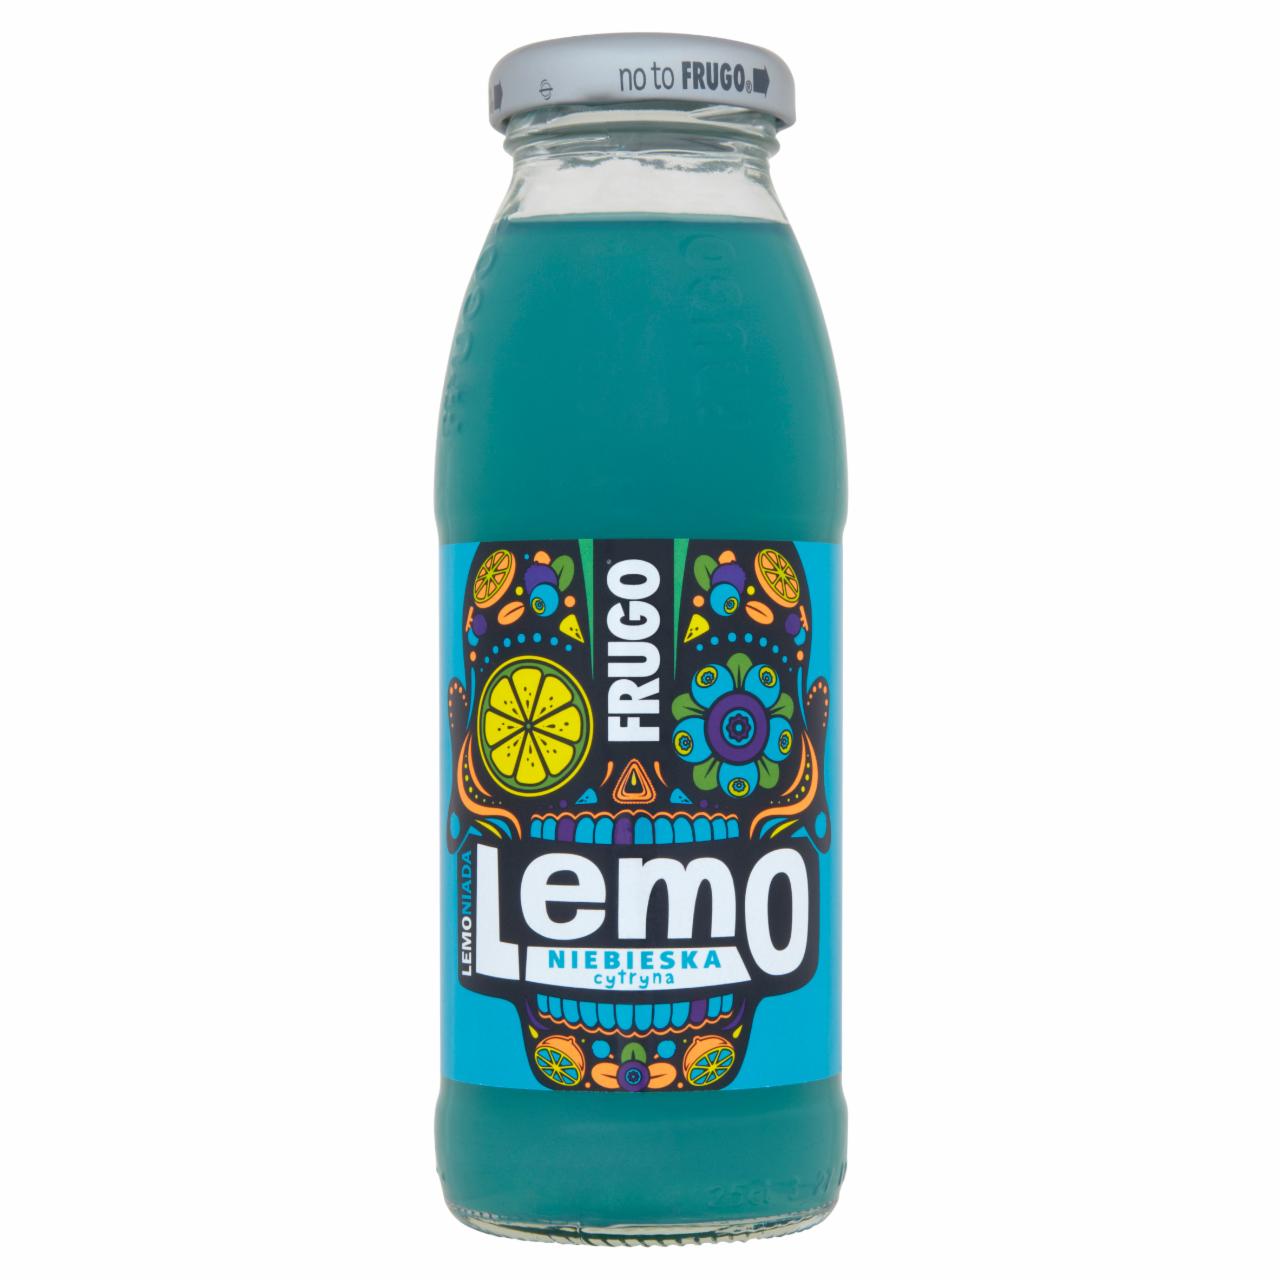 Zdjęcia - Frugo Lemo Lemoniada Niebieska cytryna Napój niegazowany 250 ml